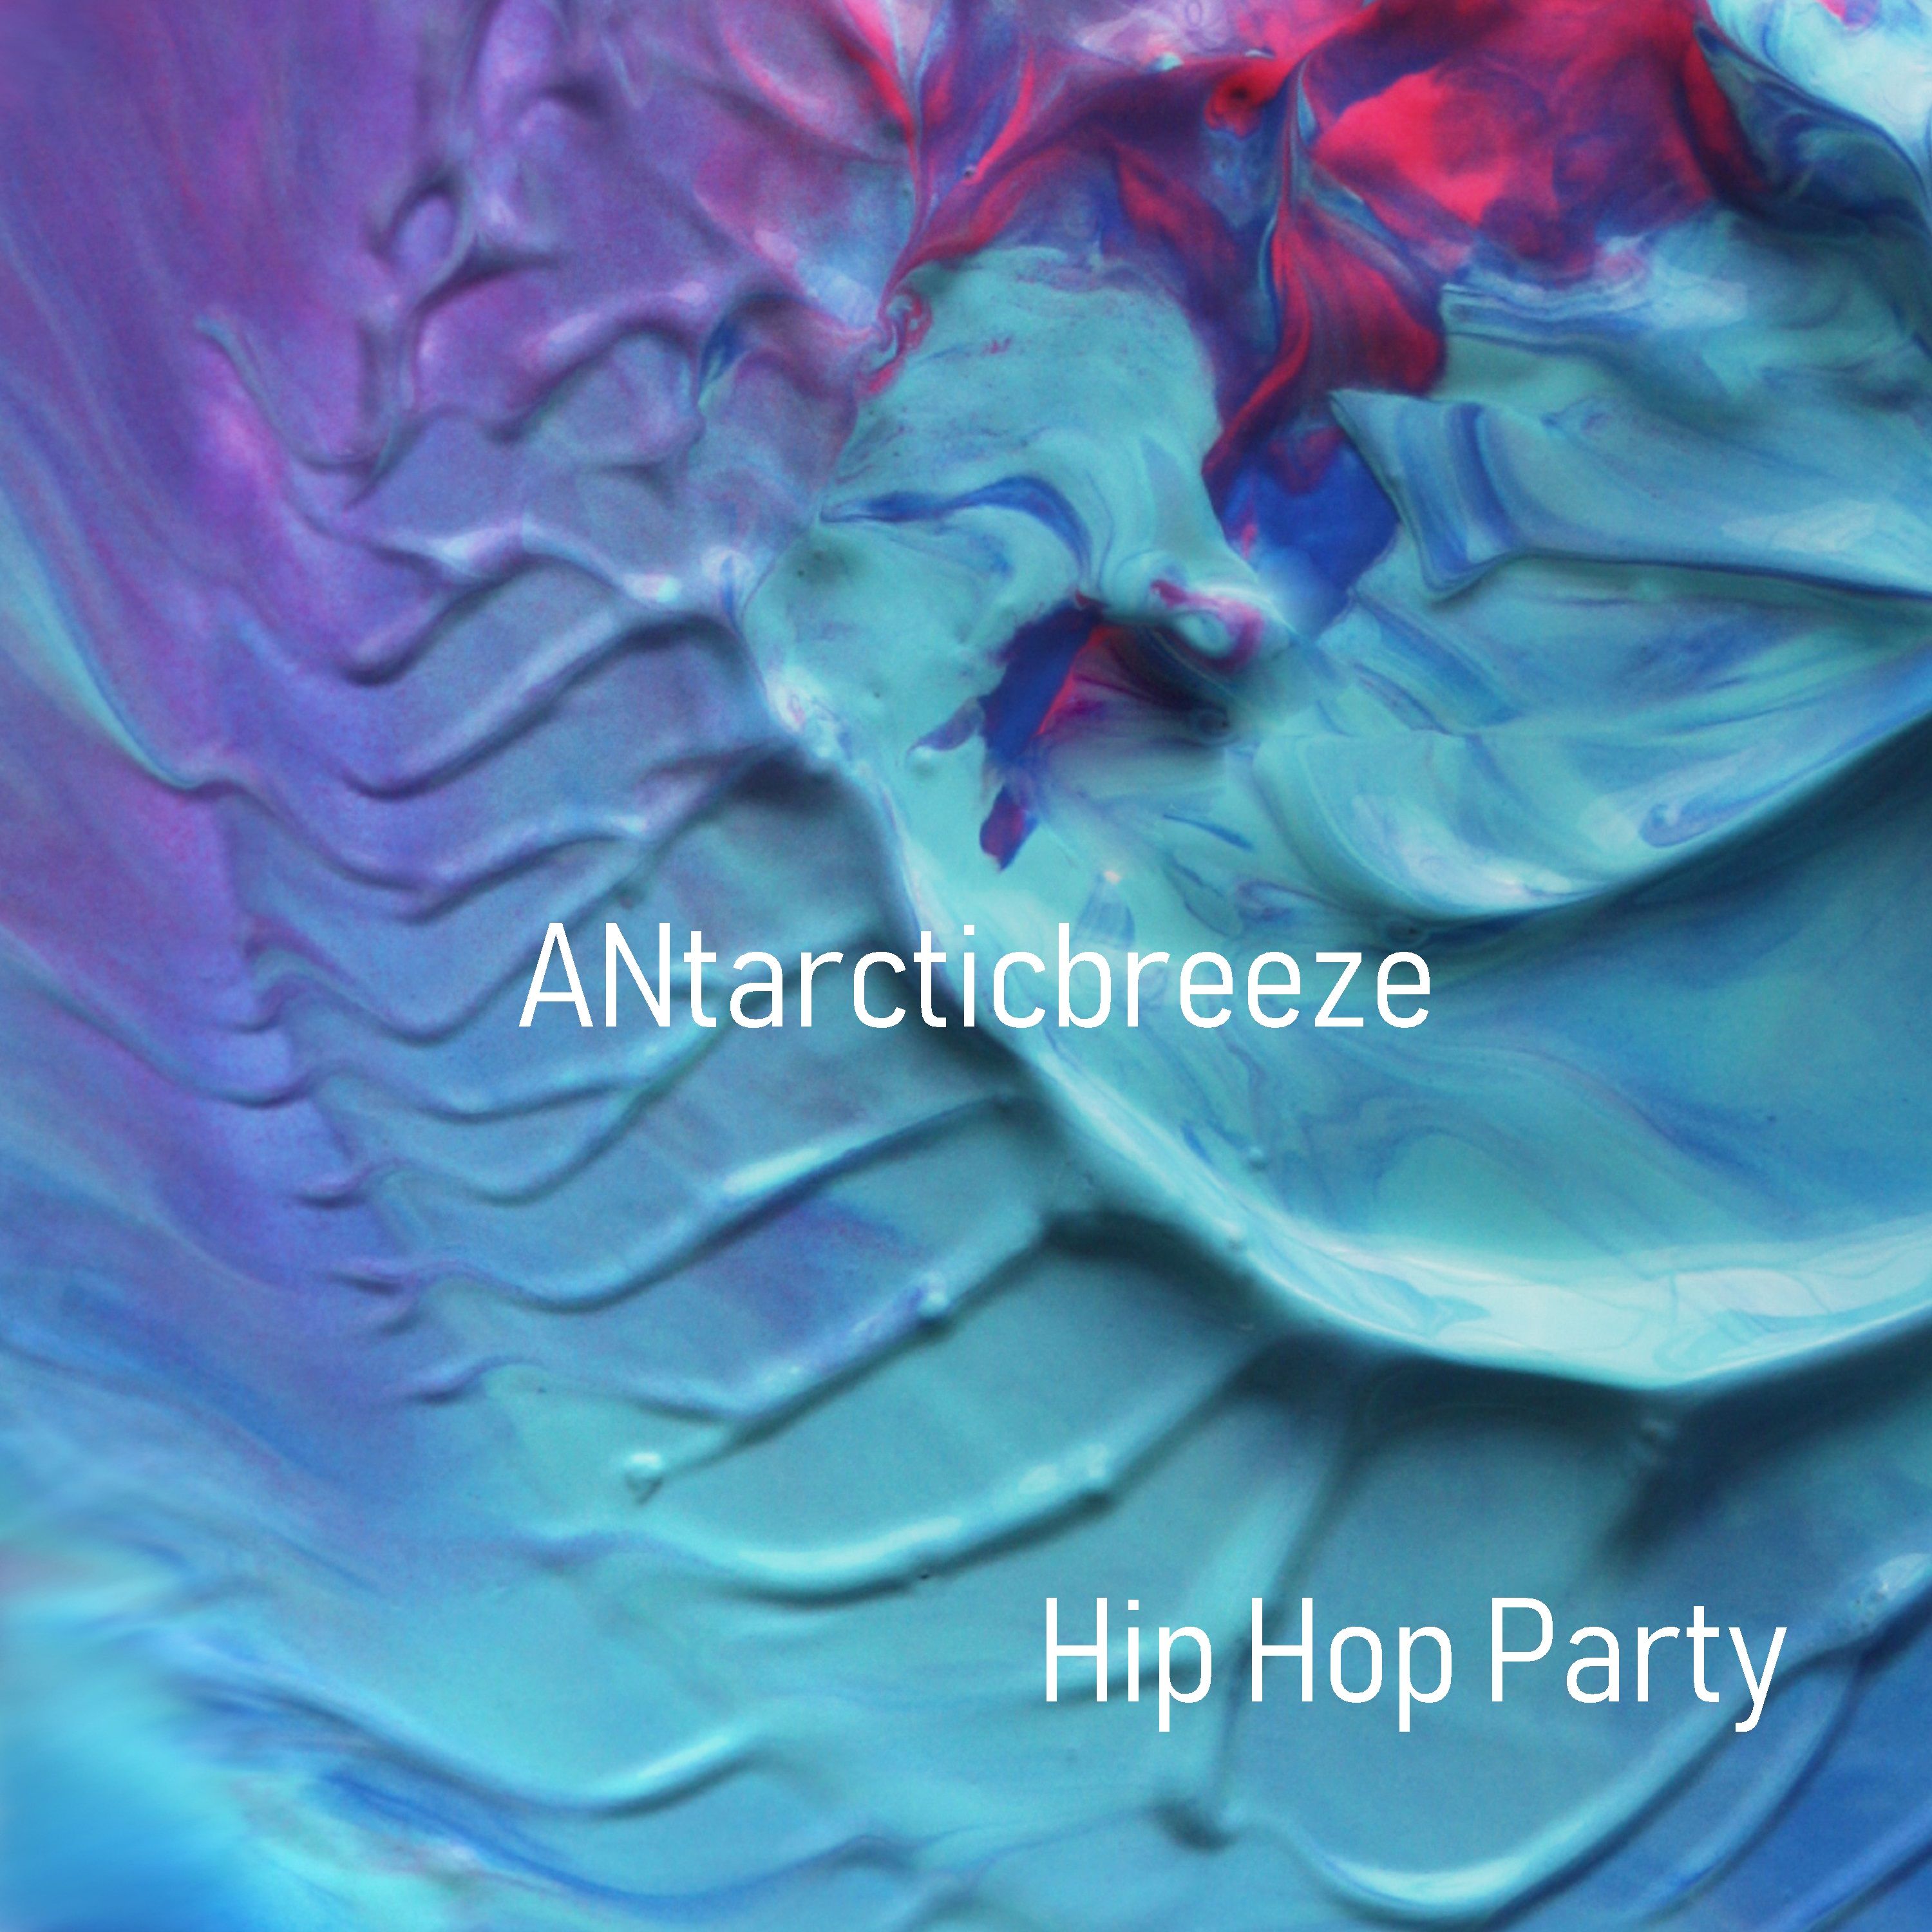 Descarca Hip Hop Party - Positive (Unlimit Use Music) by ANtarcticbreeze